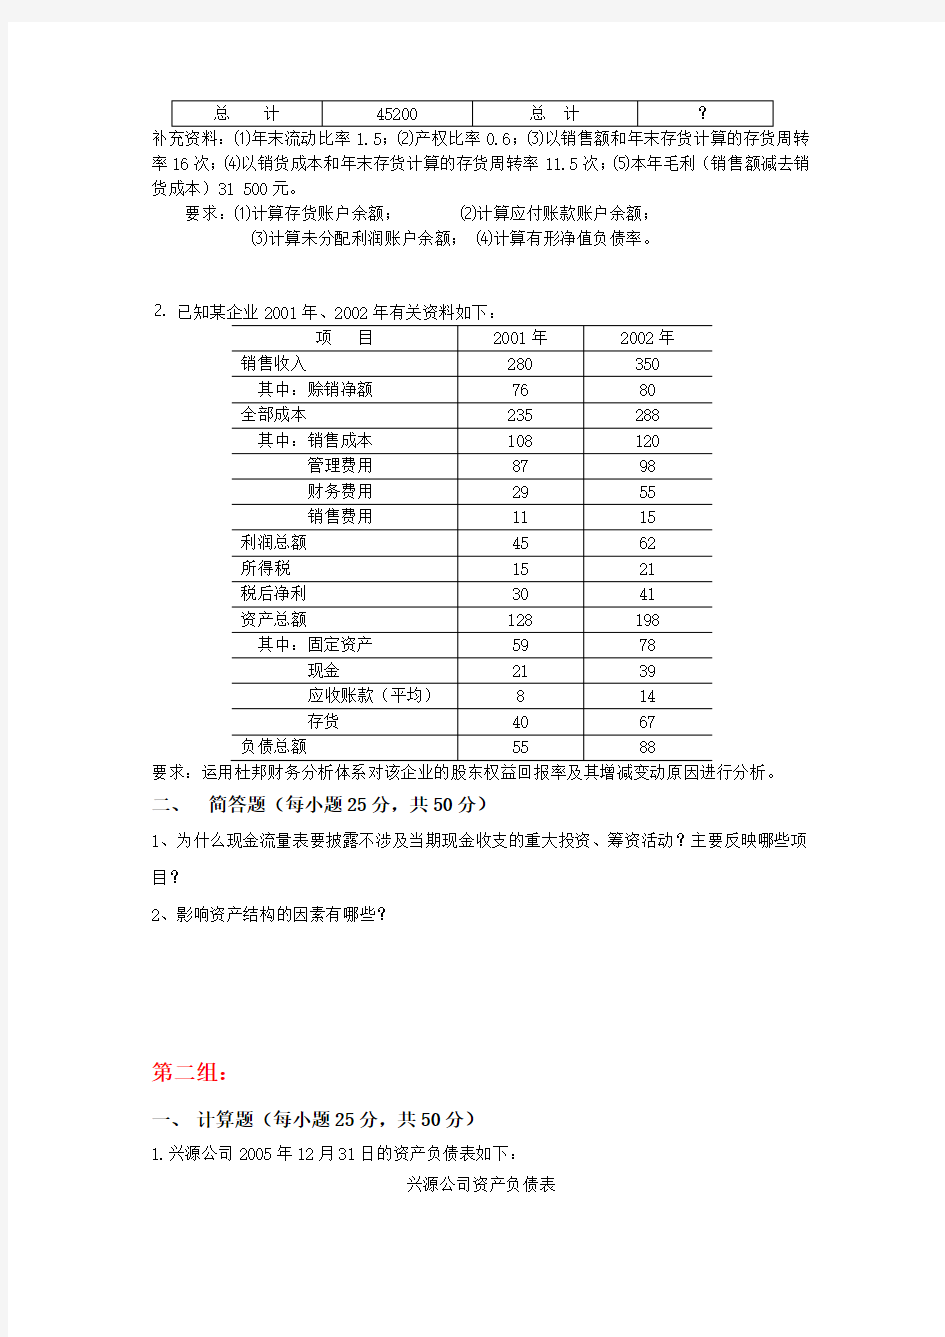 最新财务报表分析天津大学网教离线作业考核试卷答案培训讲学